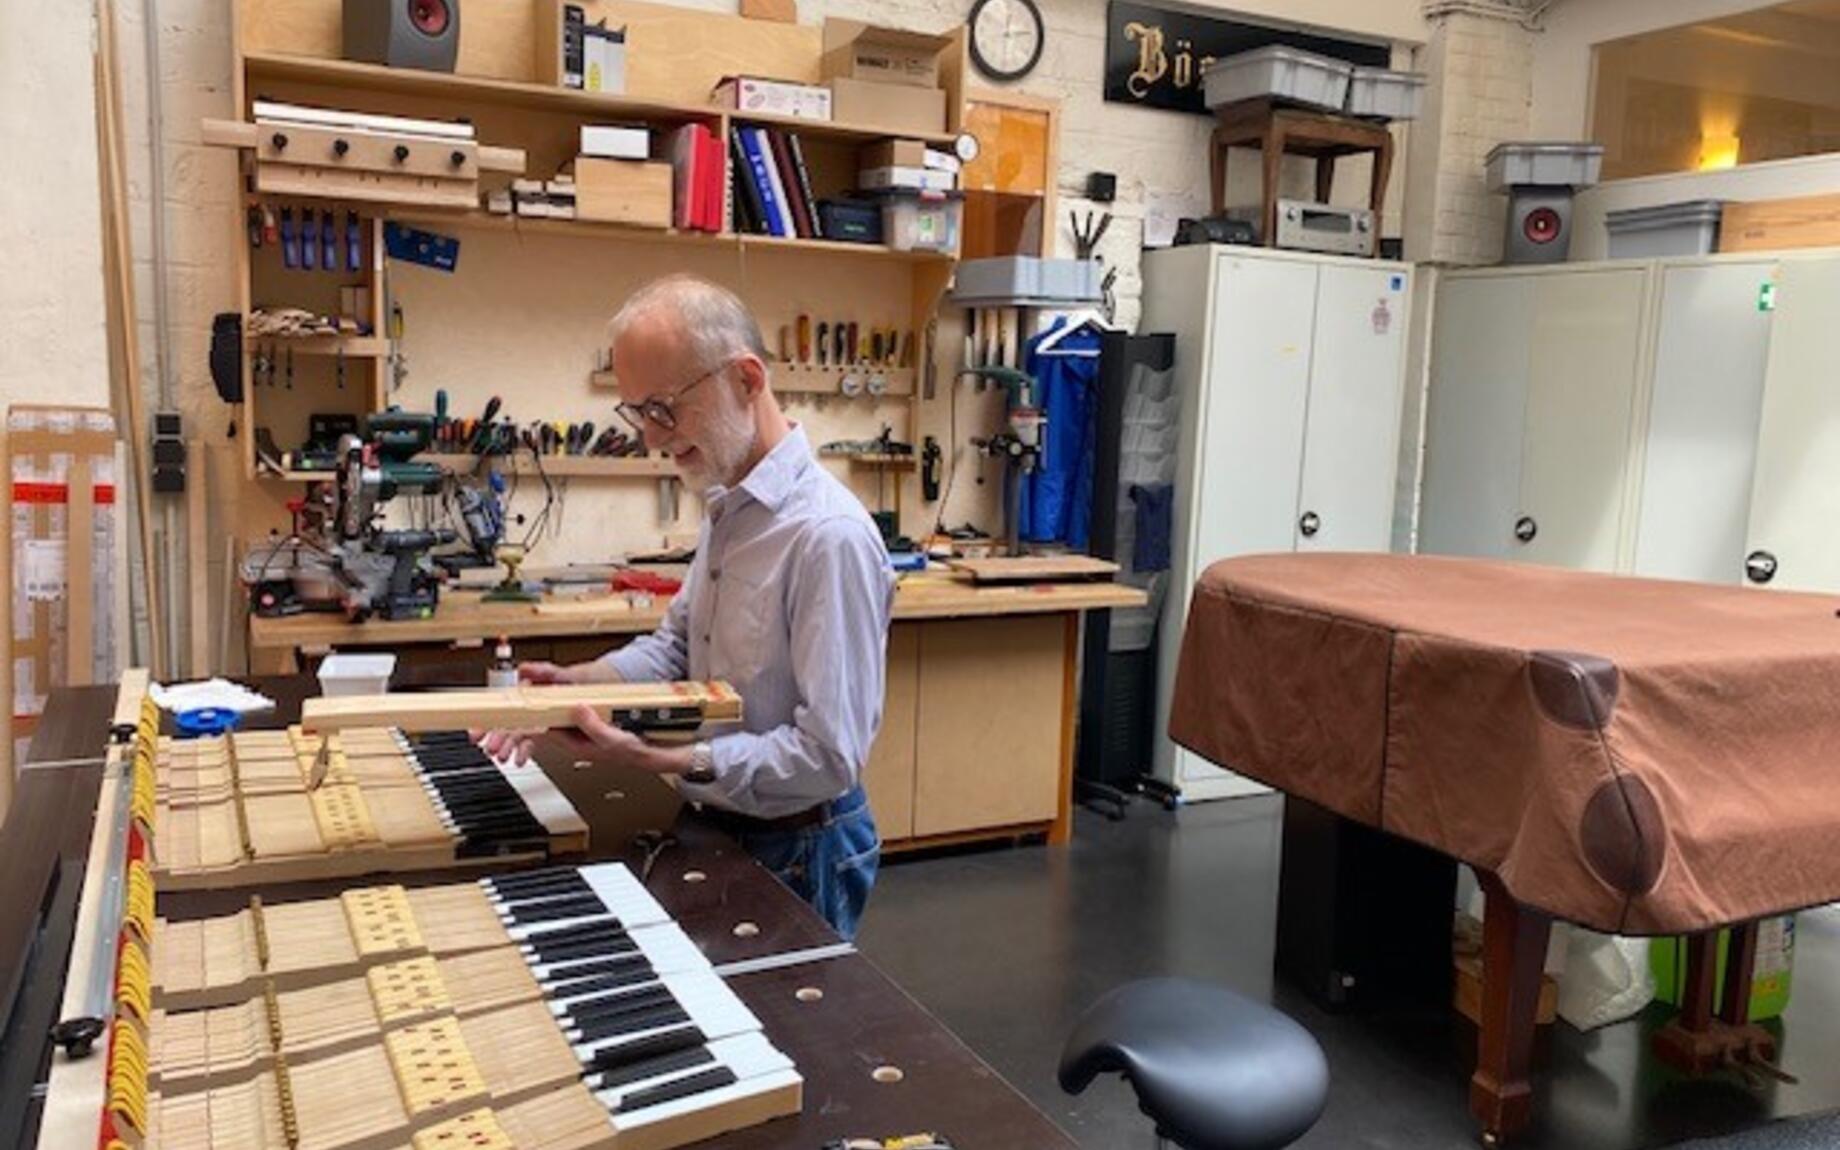 Jacek is pianobouwer en deed beroep op de subsidie verfraaiing handelspanden, een renovatiesubsidie voor ondernemers die hun pand willen aanpakken